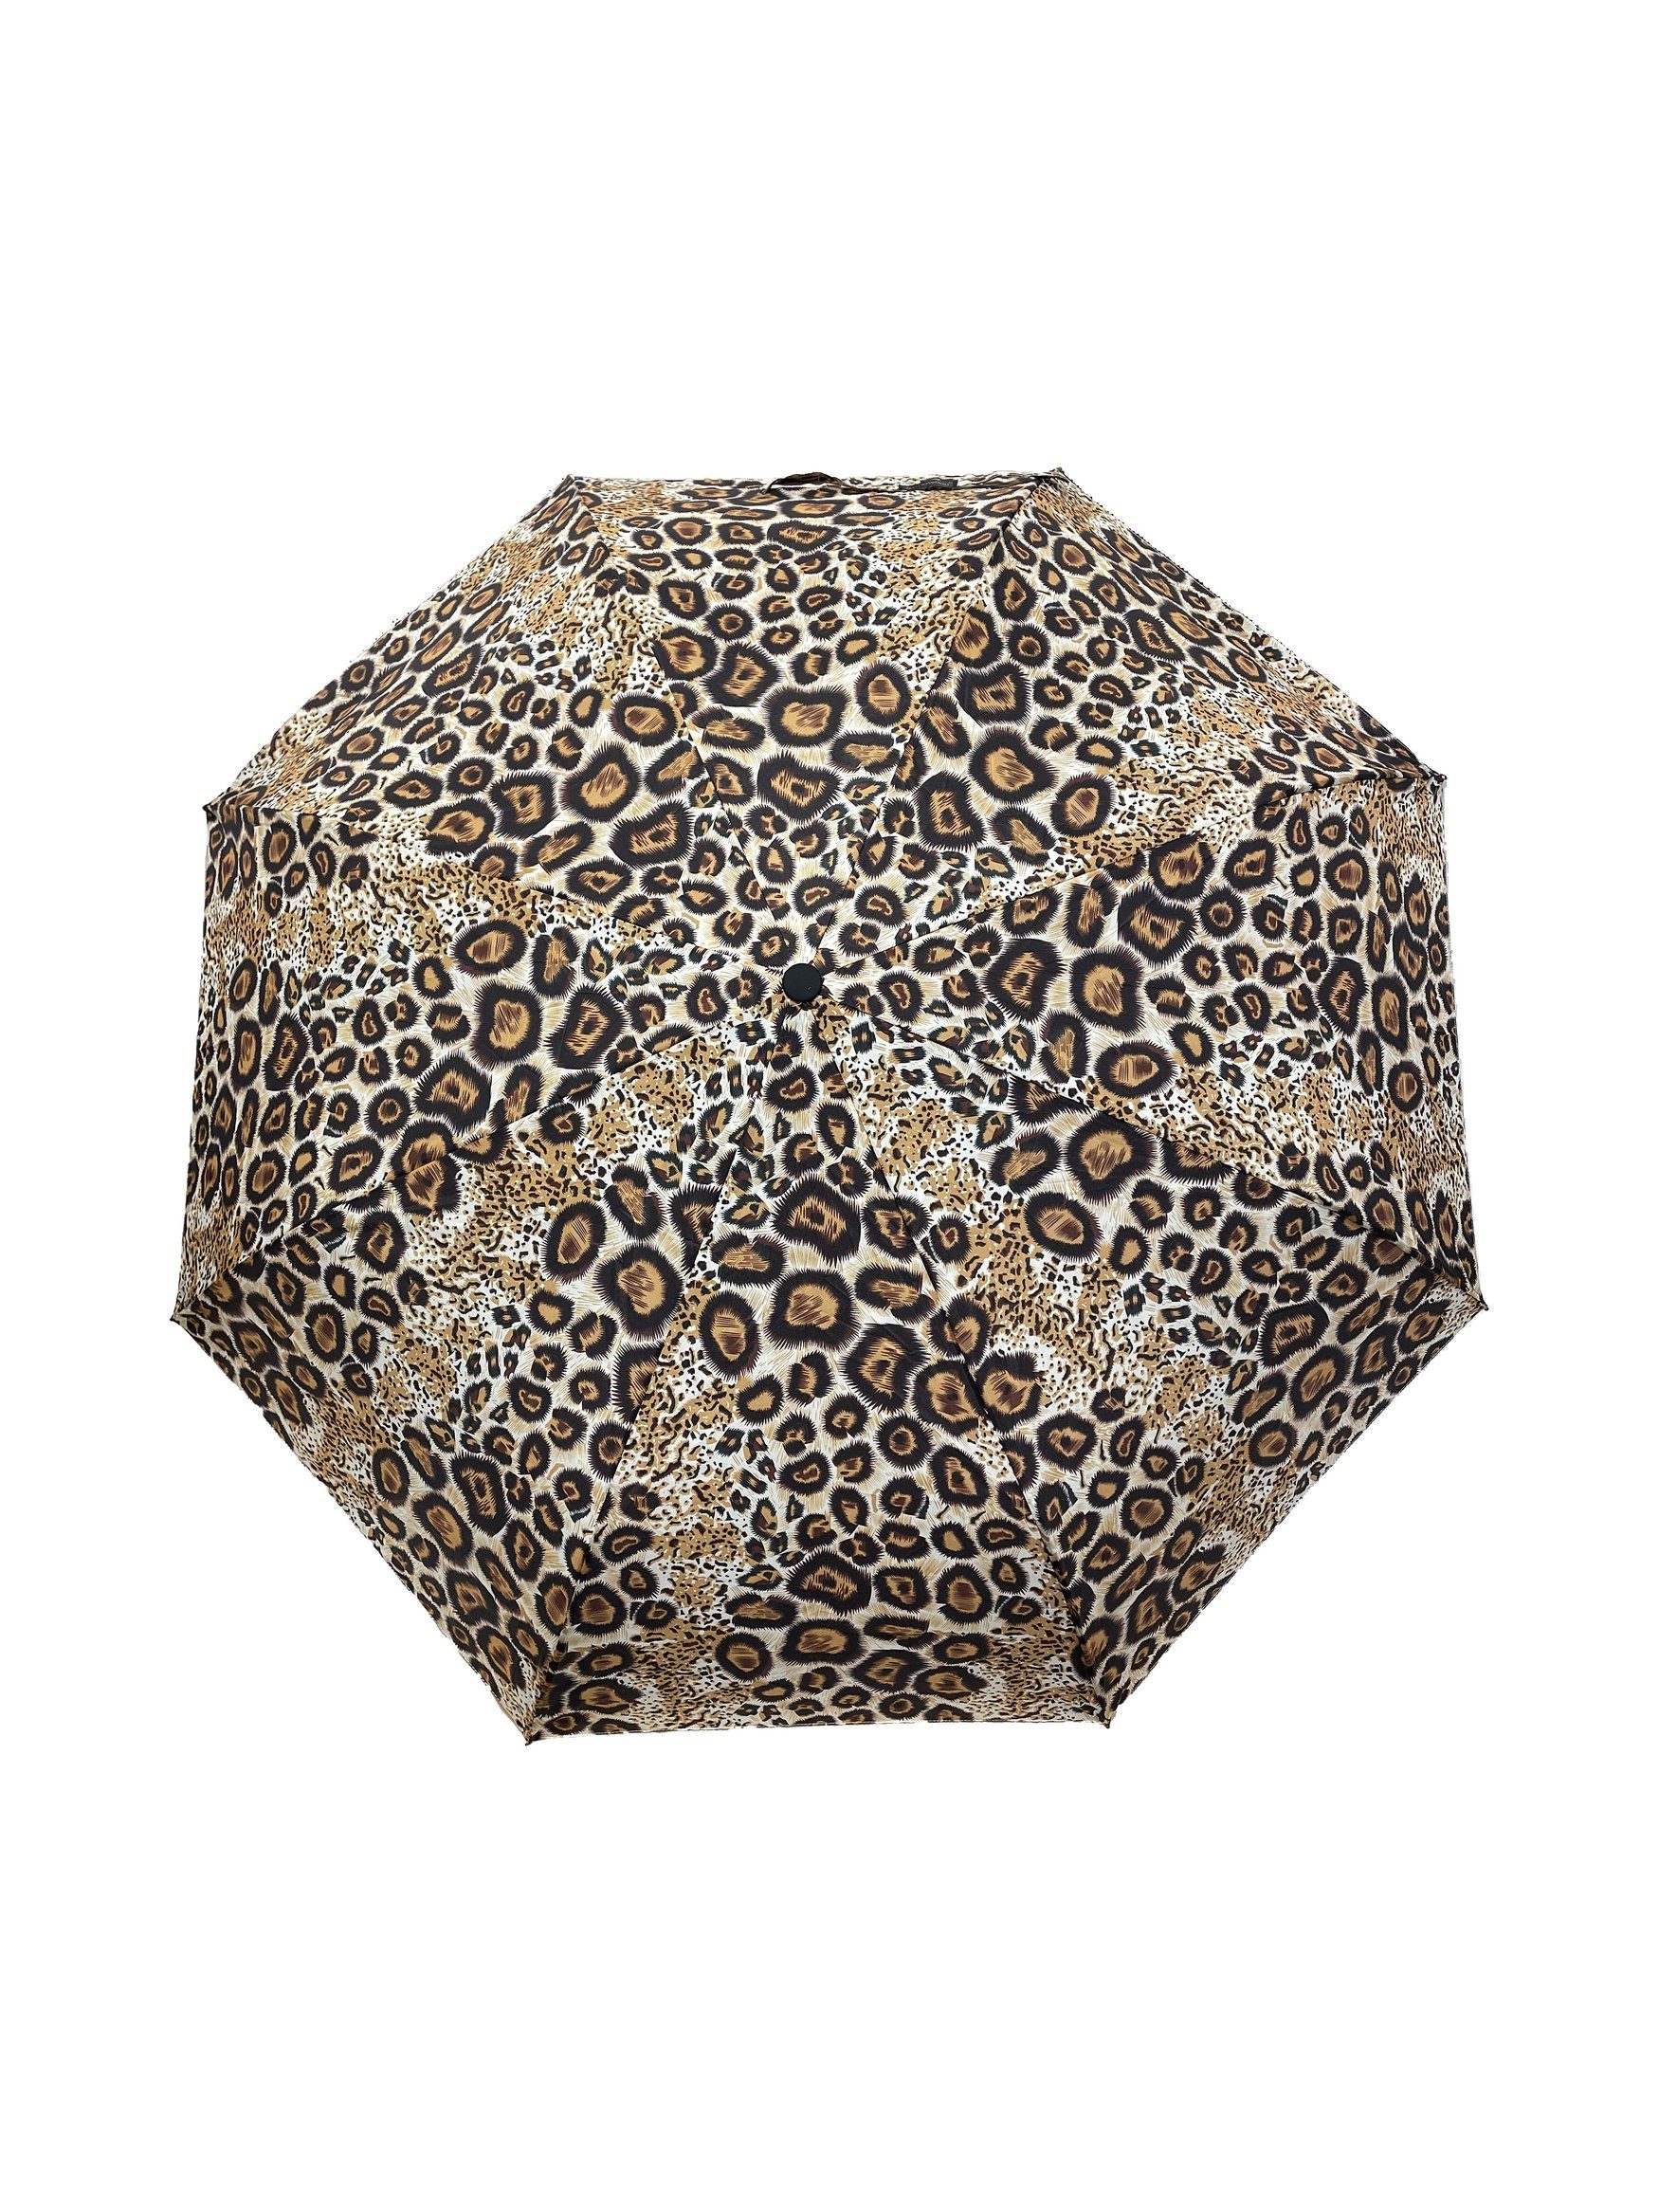 ANELY Taschenregenschirm Regenschirm Leopard Muster in Braun Taschenschirm, 6747 Kleiner Automatik